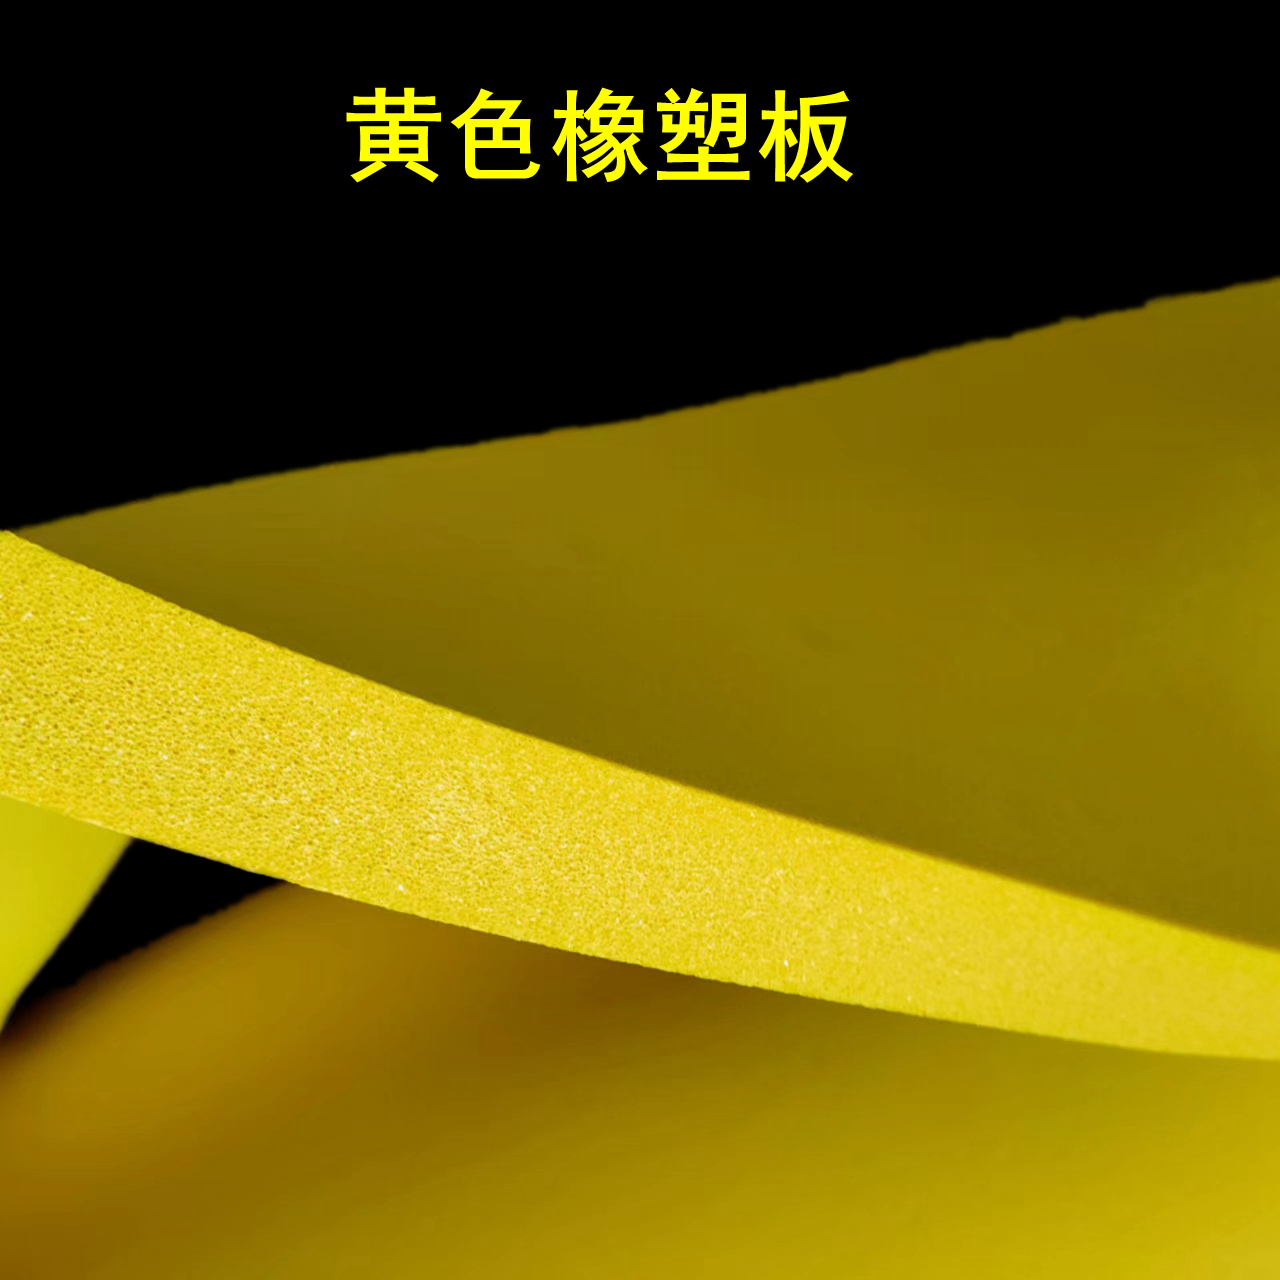 黄色橡塑板.jpg